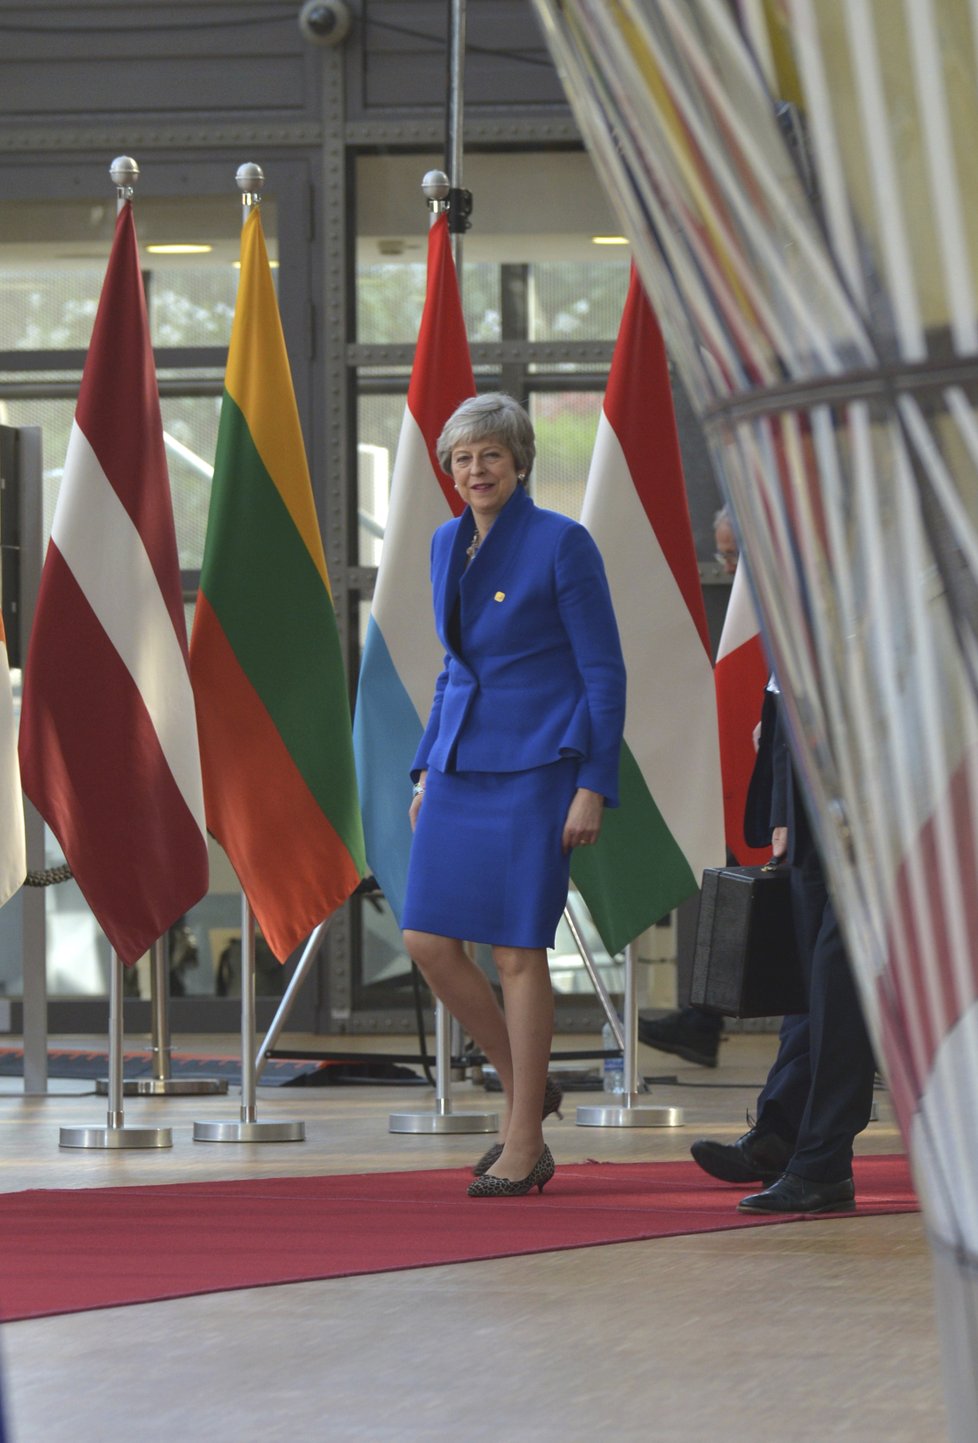 Britská premiérka Theresa Mayová přijela do Bruselu i tentokrát s hlavou vzhůru a úsměvem na rtech. Oblékla se do modré - tedy barvy, která převládá na vlajce EU. Stejnou barvu zvolila i německá kancléřka Angela Merkelová.